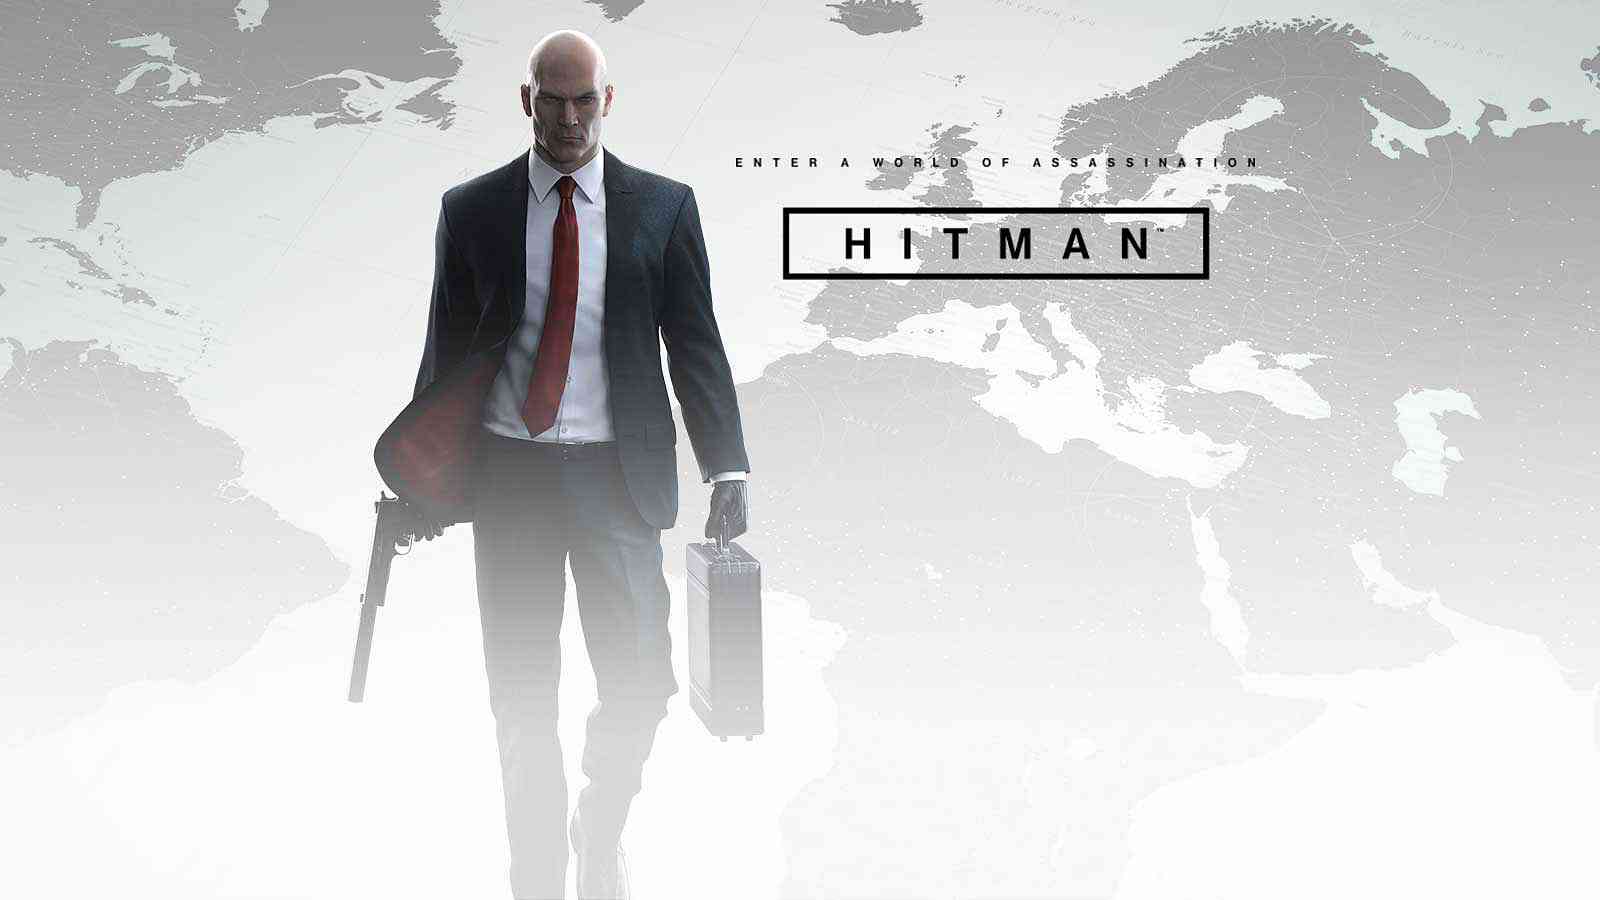 Nový obsah do hry Hitman bude oznámen 24. října